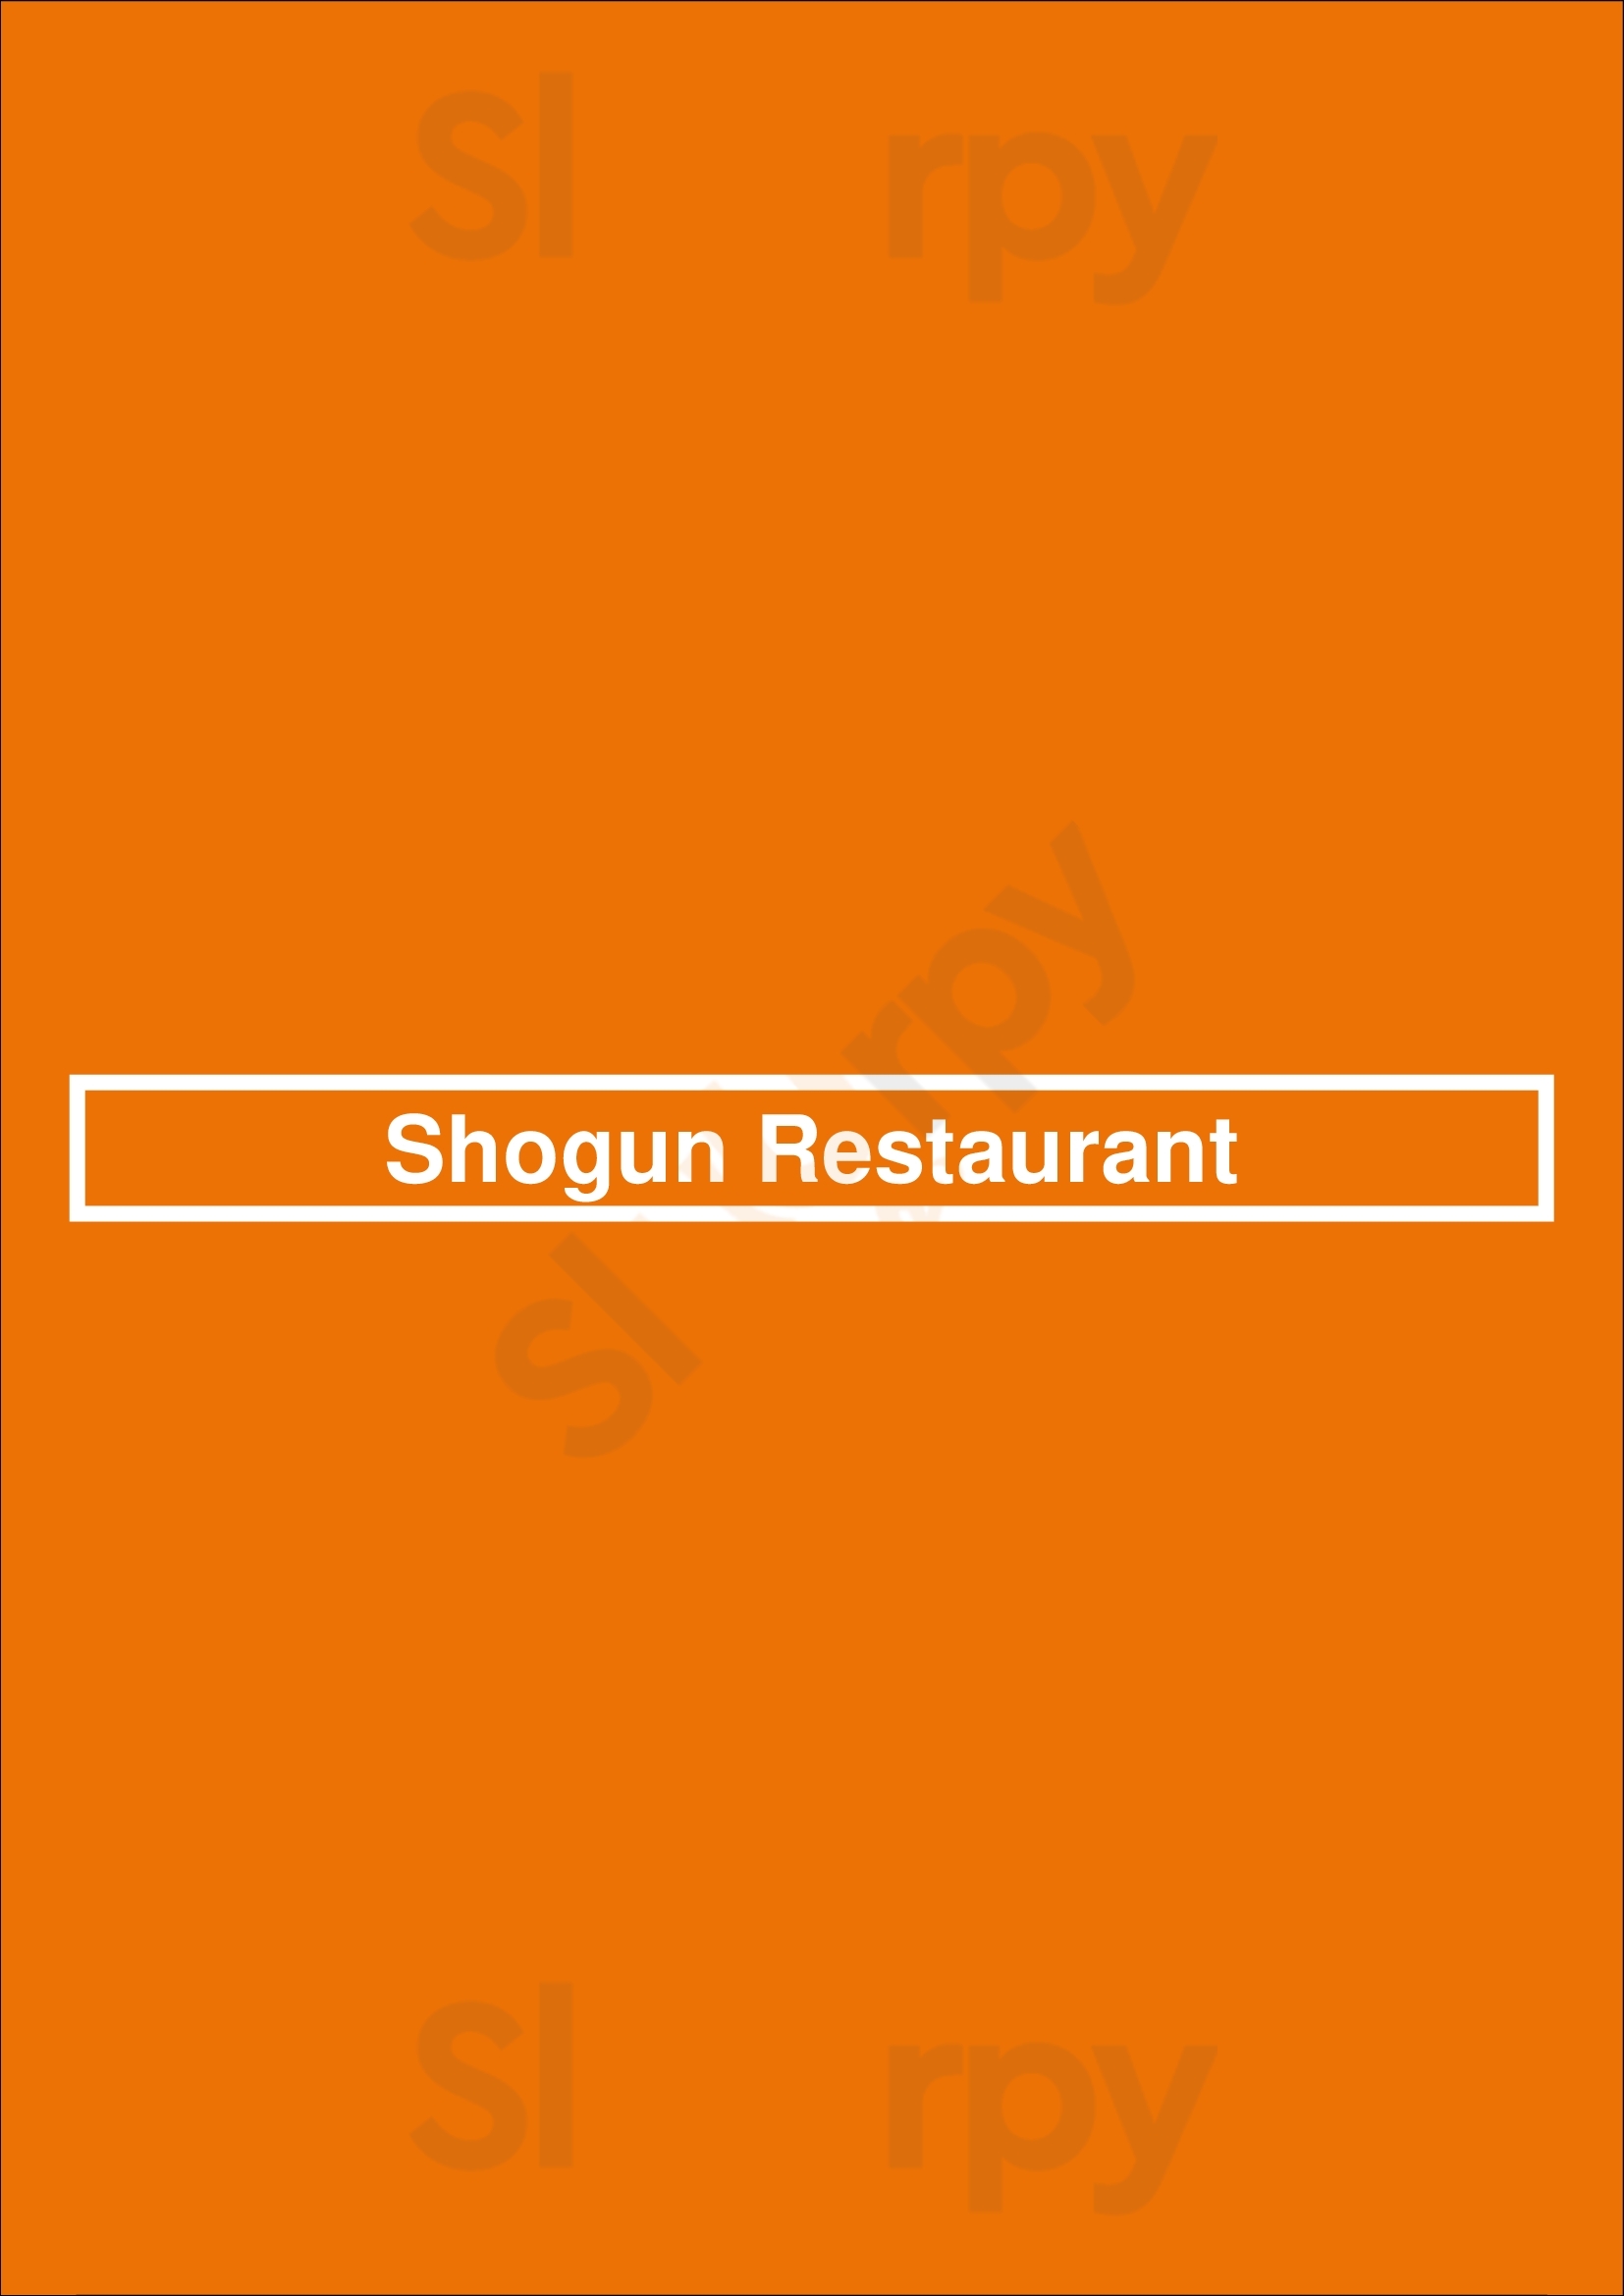 Shogun Restaurant Phoenix Menu - 1